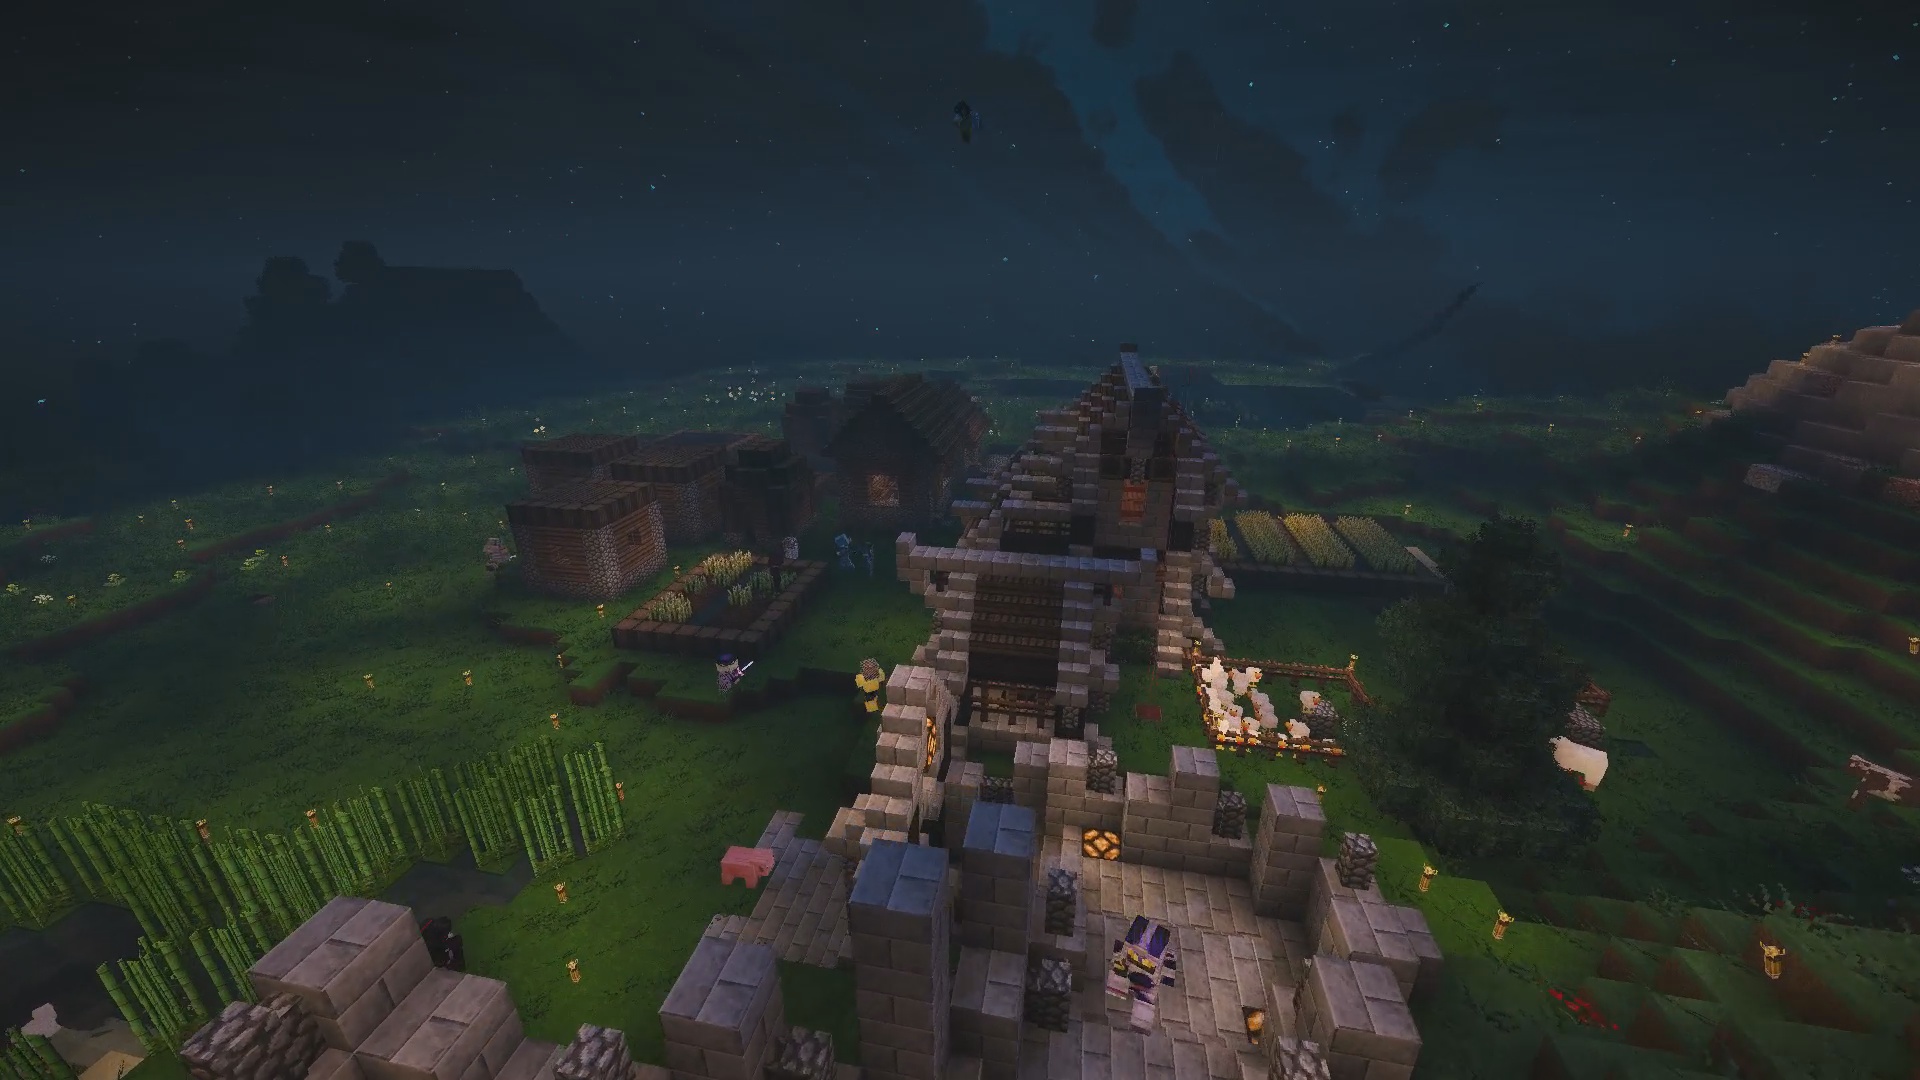 Bienvenue chez neo_light avec son château et sa ville encore en construction !